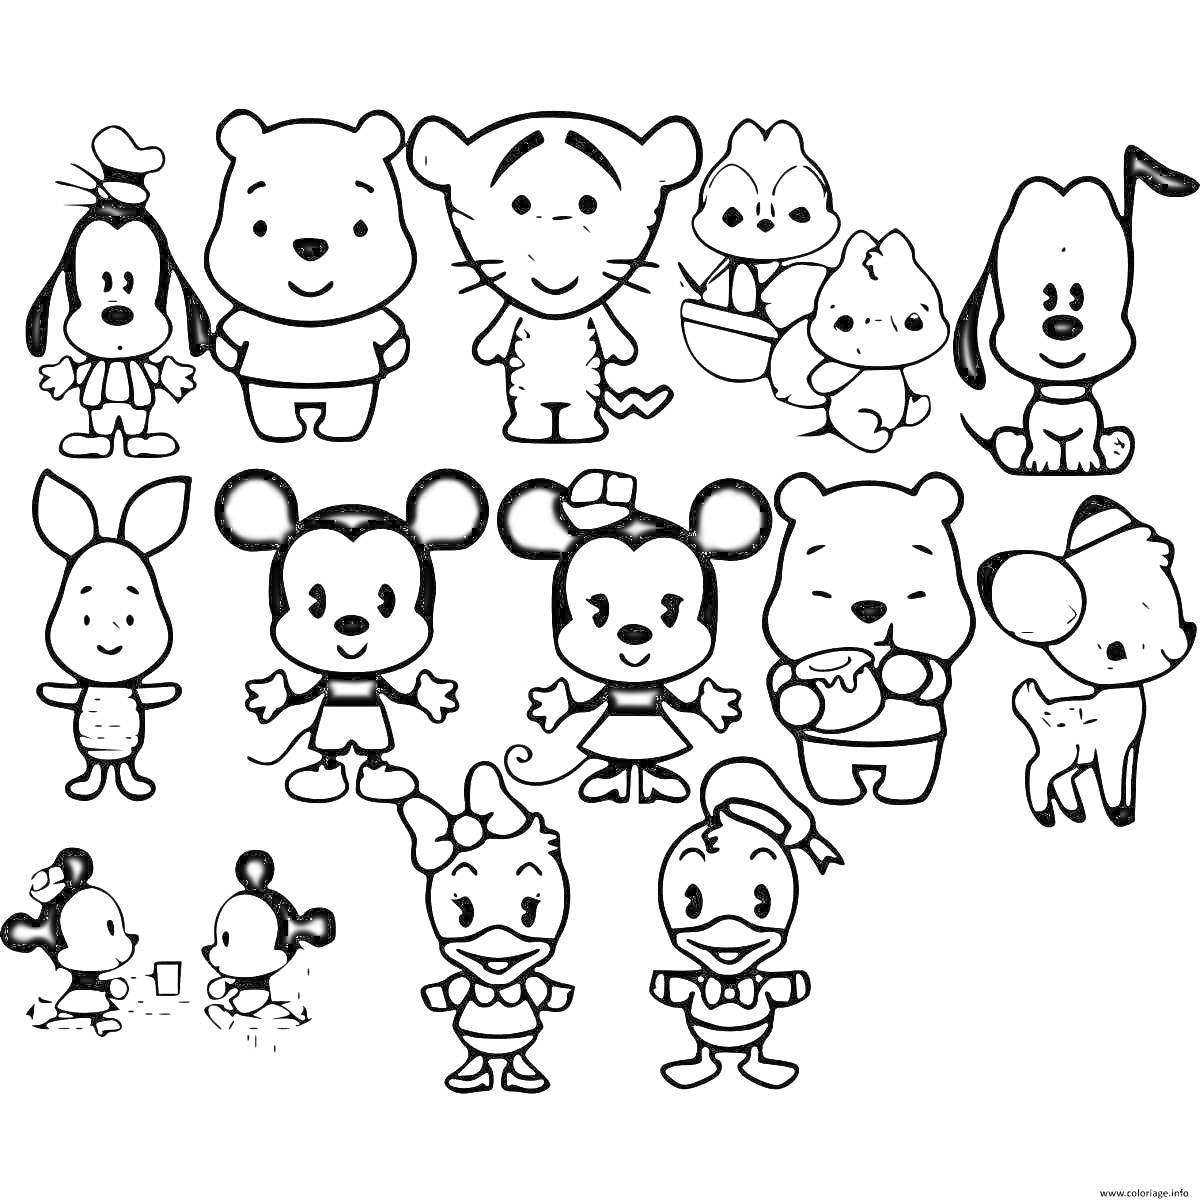 Раскраска персонажи мультфильмов - собака, тигр, утка, медведь, мышь, кролик, олененок